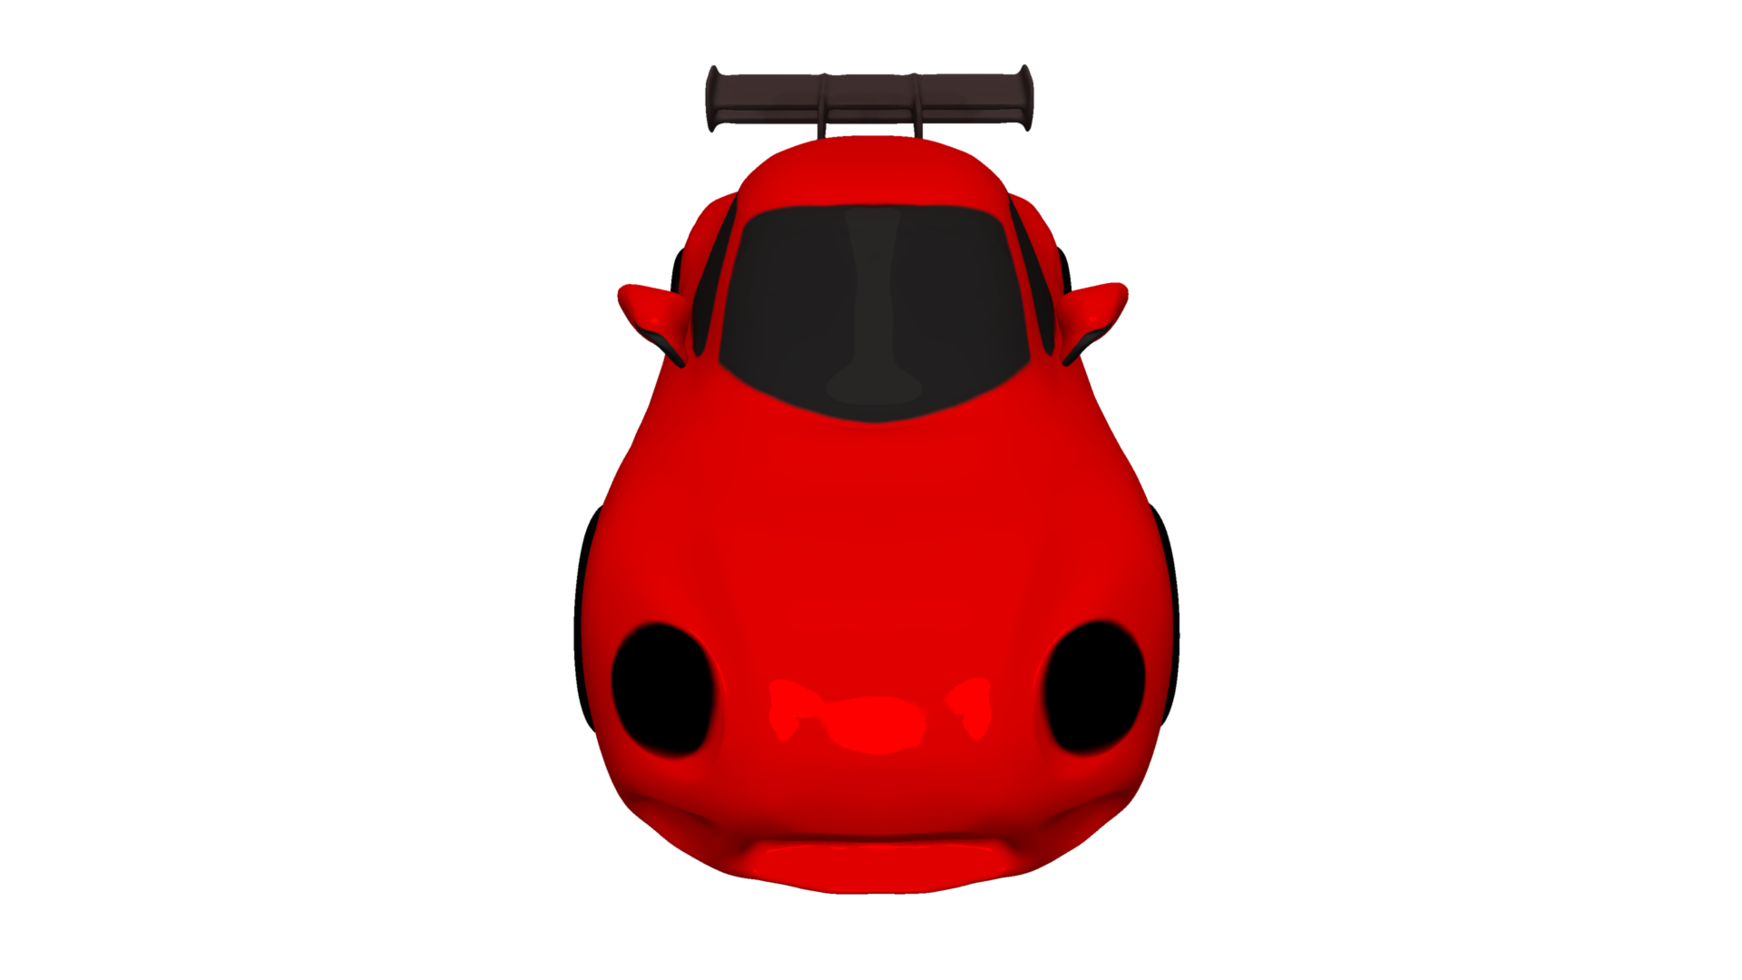 Car cartoon Porsche 3d render png